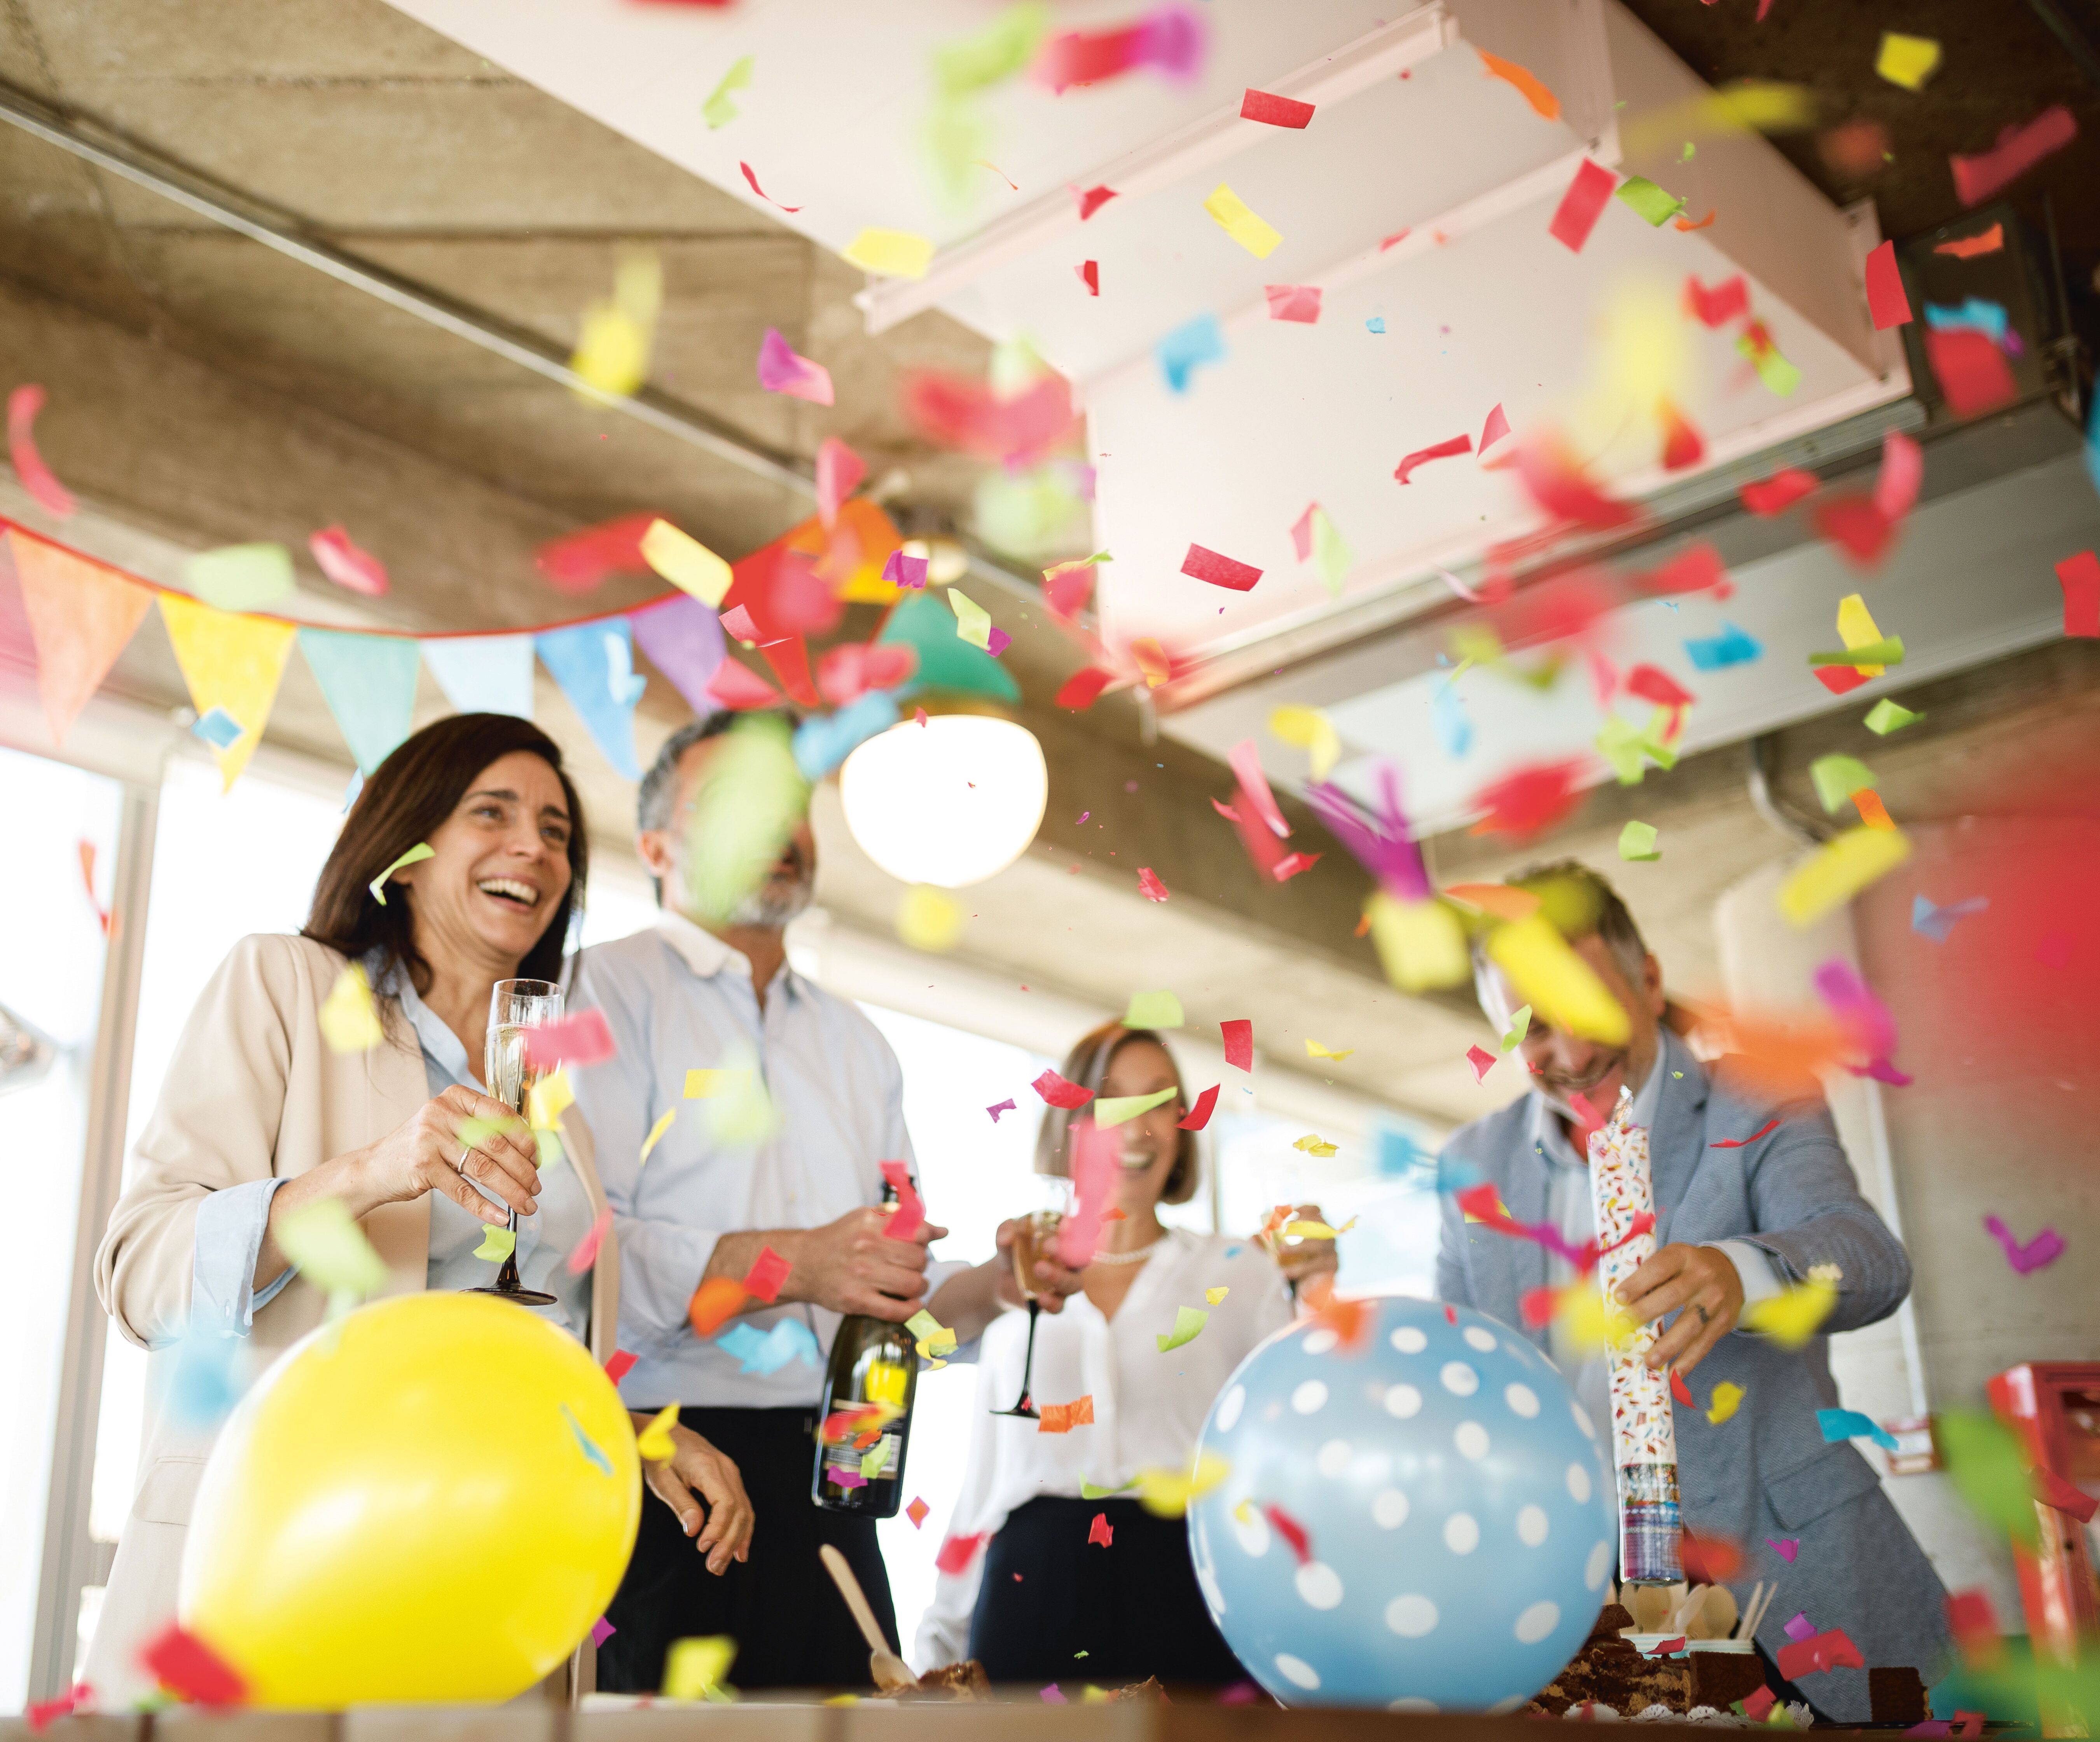 Fröhliche Party mit Luftballons und Konfetti